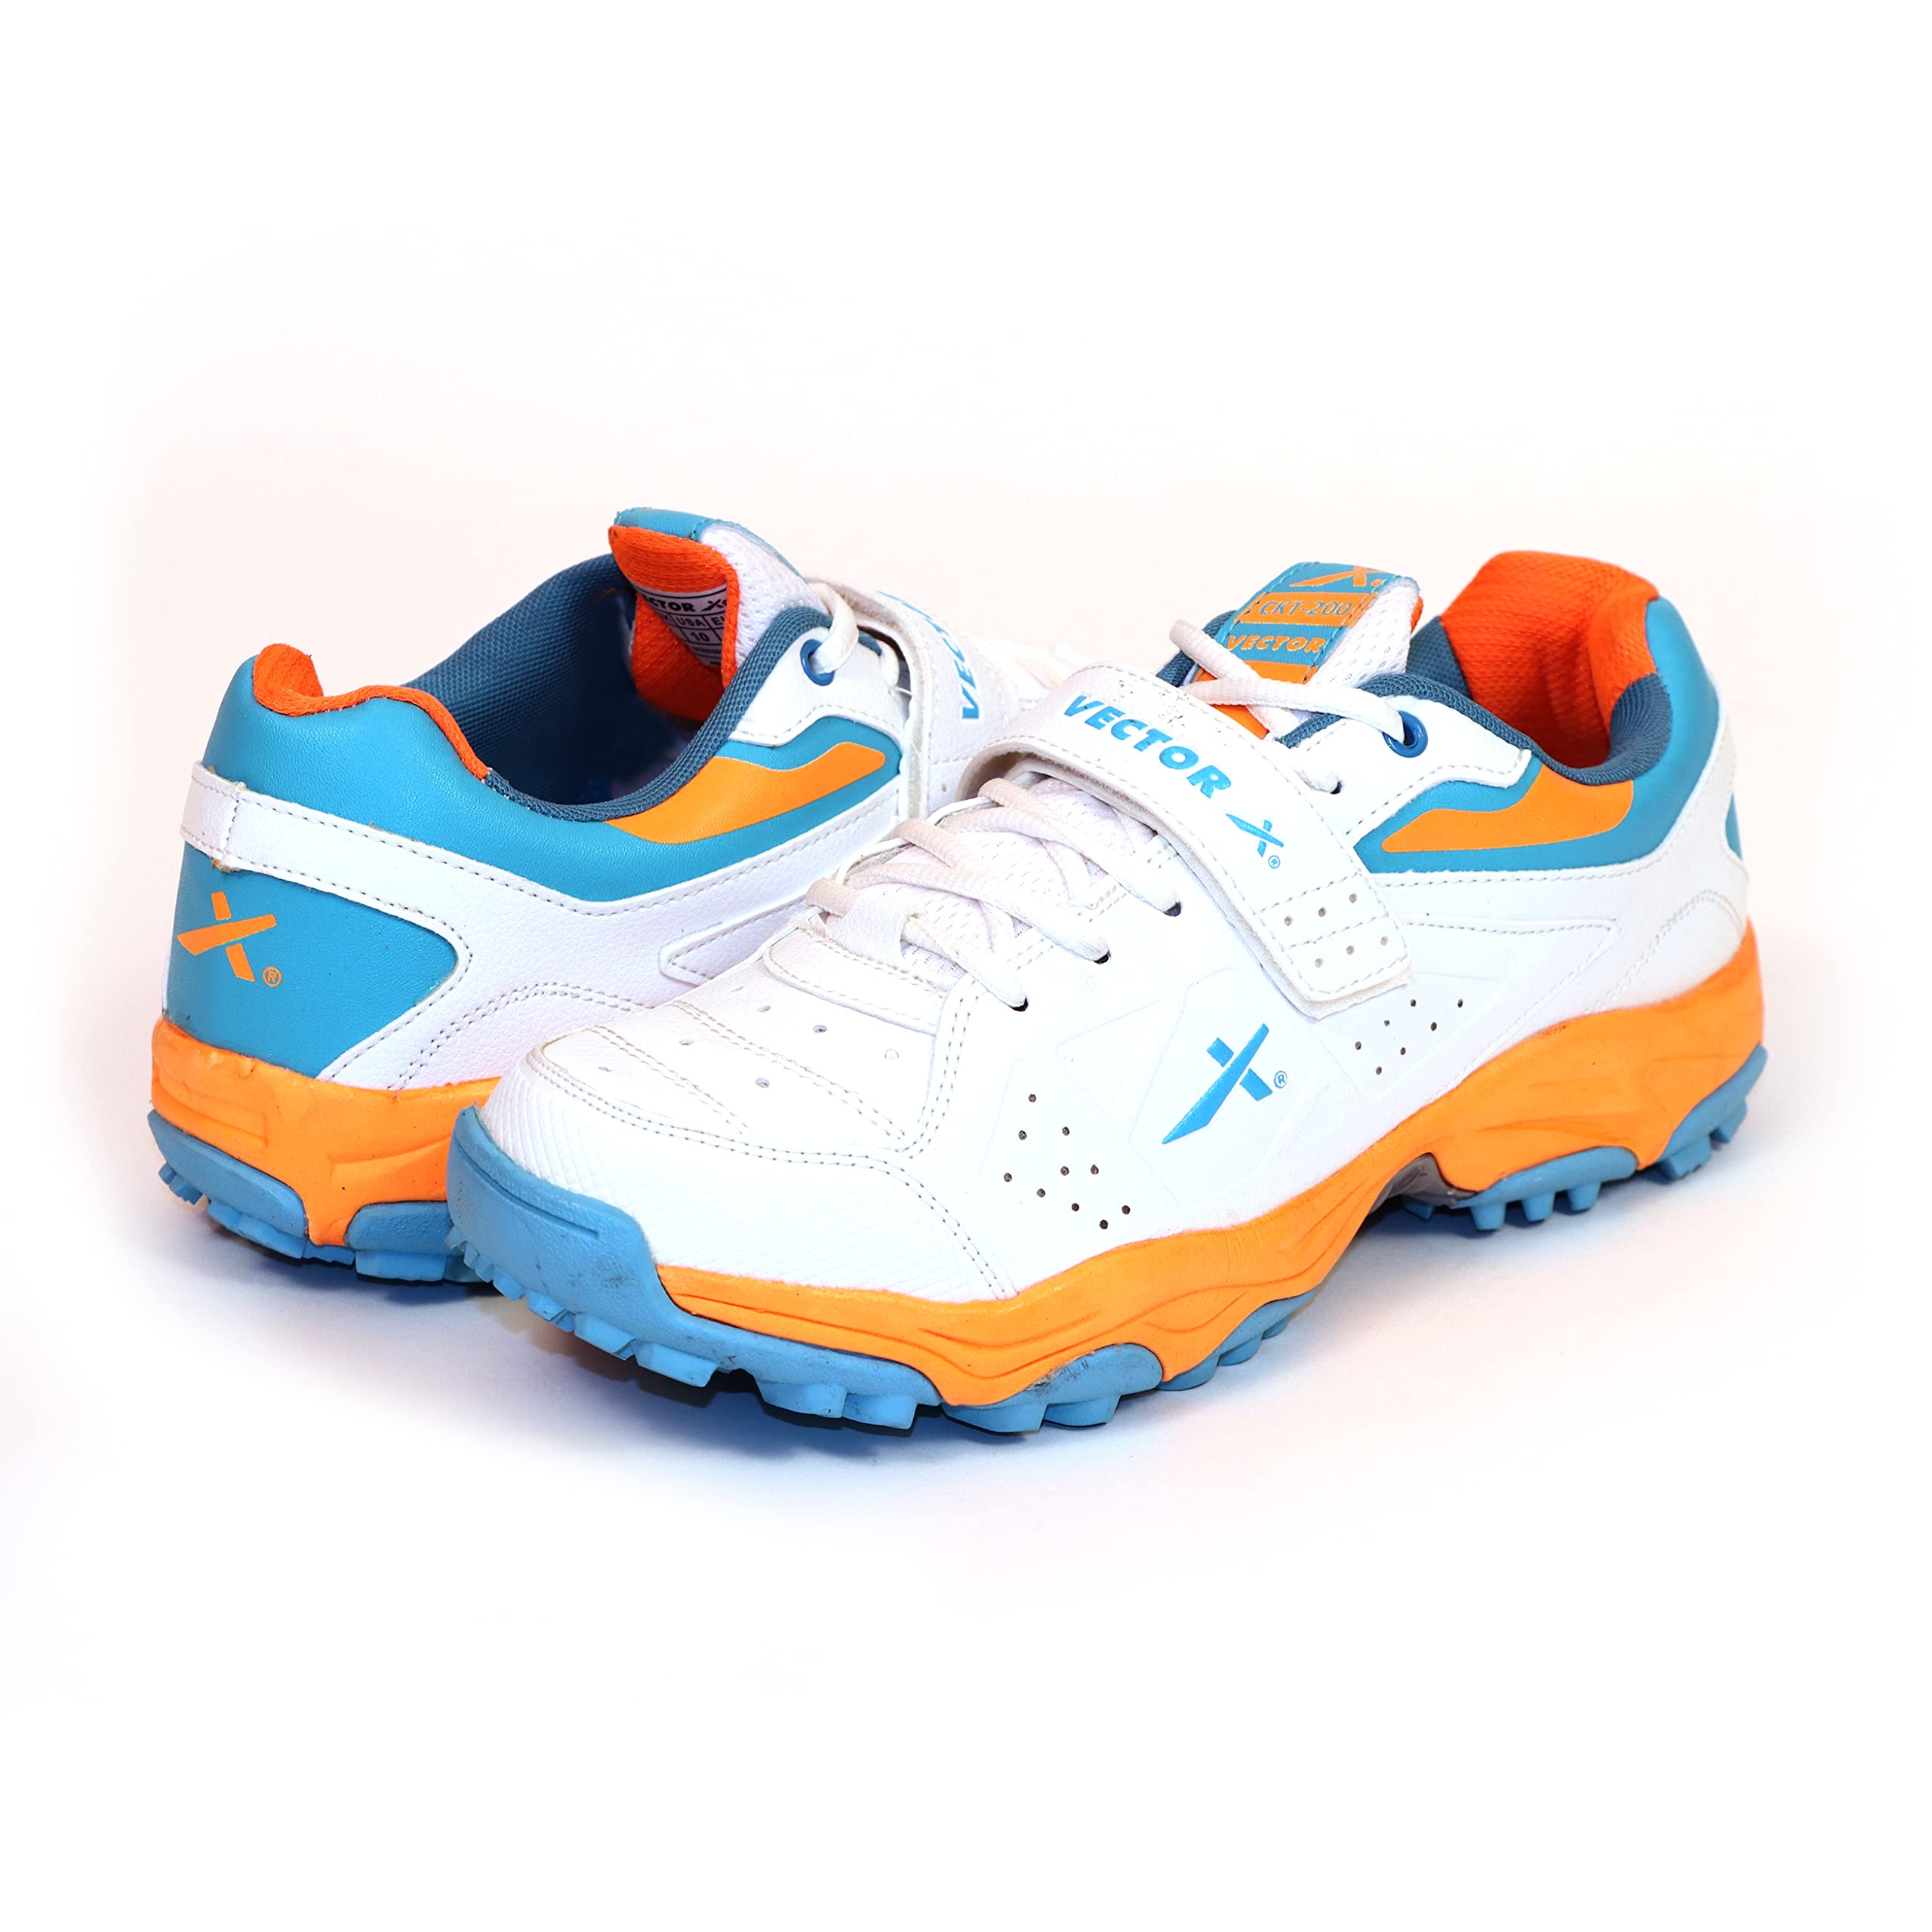 WMX KD Cricket-Schuhe aus Gummi mit Spike-Schuhen, für Astro Turf Sport Hockey Golf & Outdoor Trekking (Größe 35-45), Ckt - 200, 42 EU